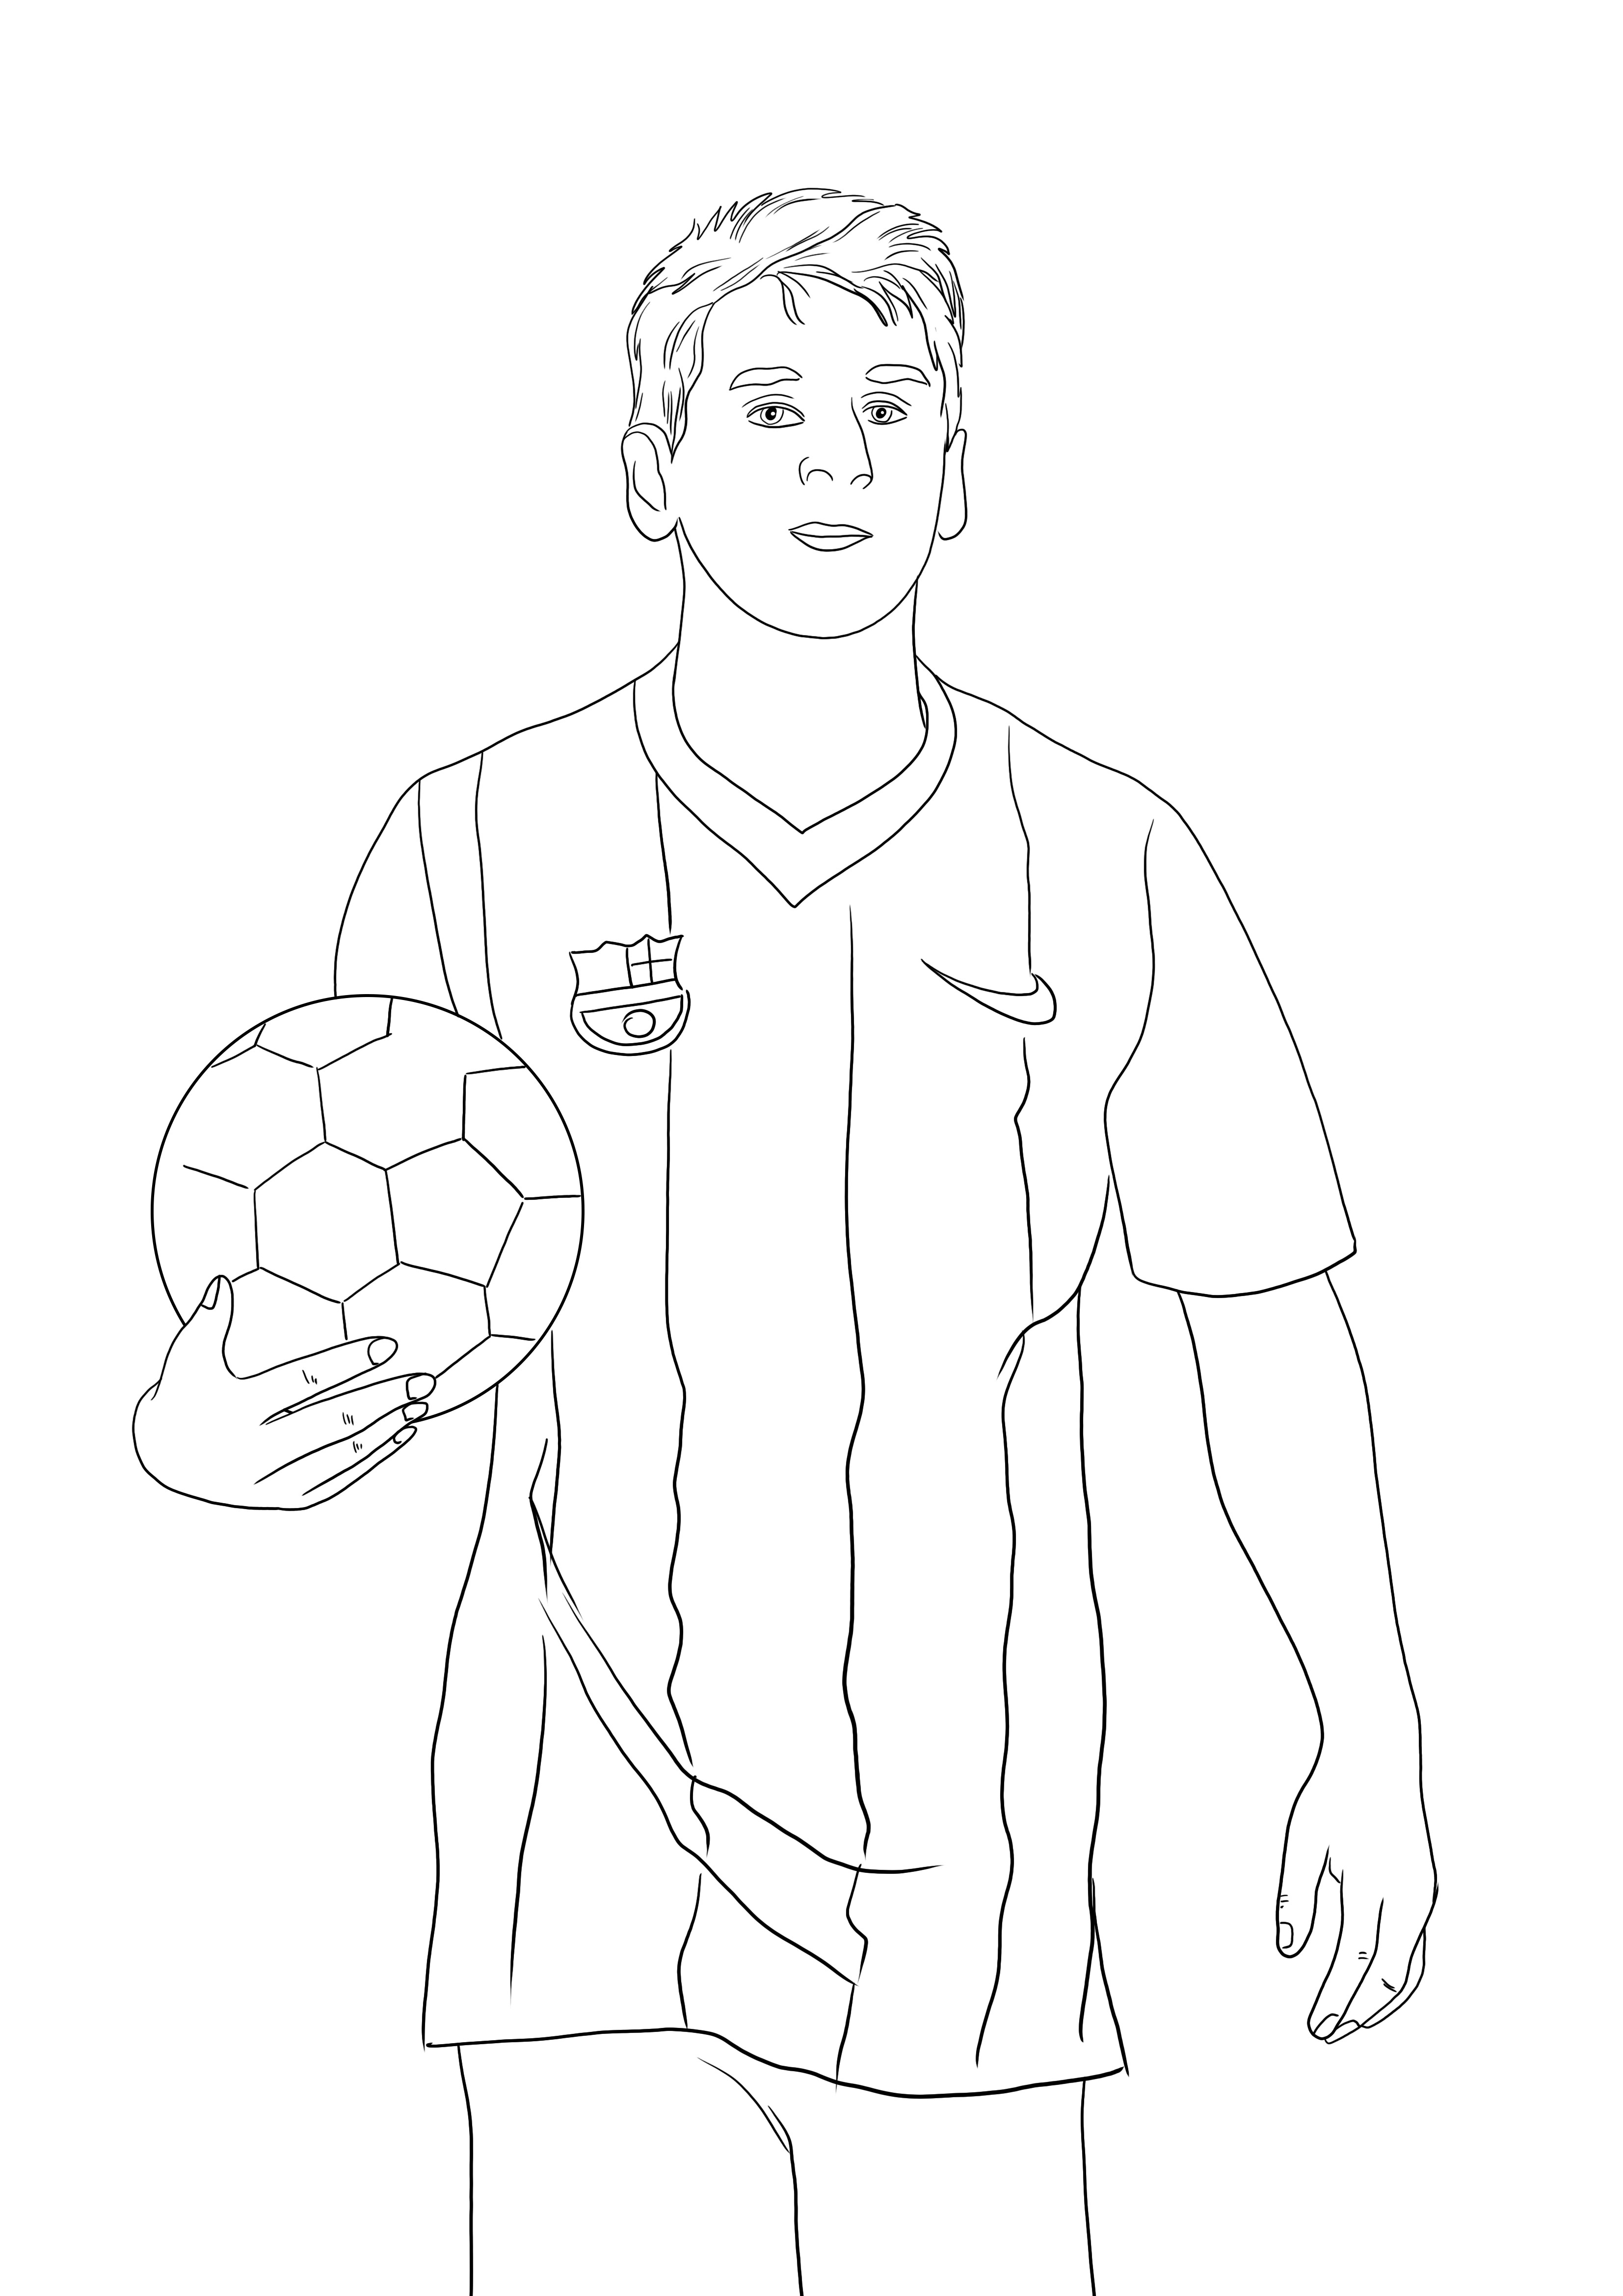 Coloriage Lionel Messi gratuit à imprimer et s'amuser en coloriant